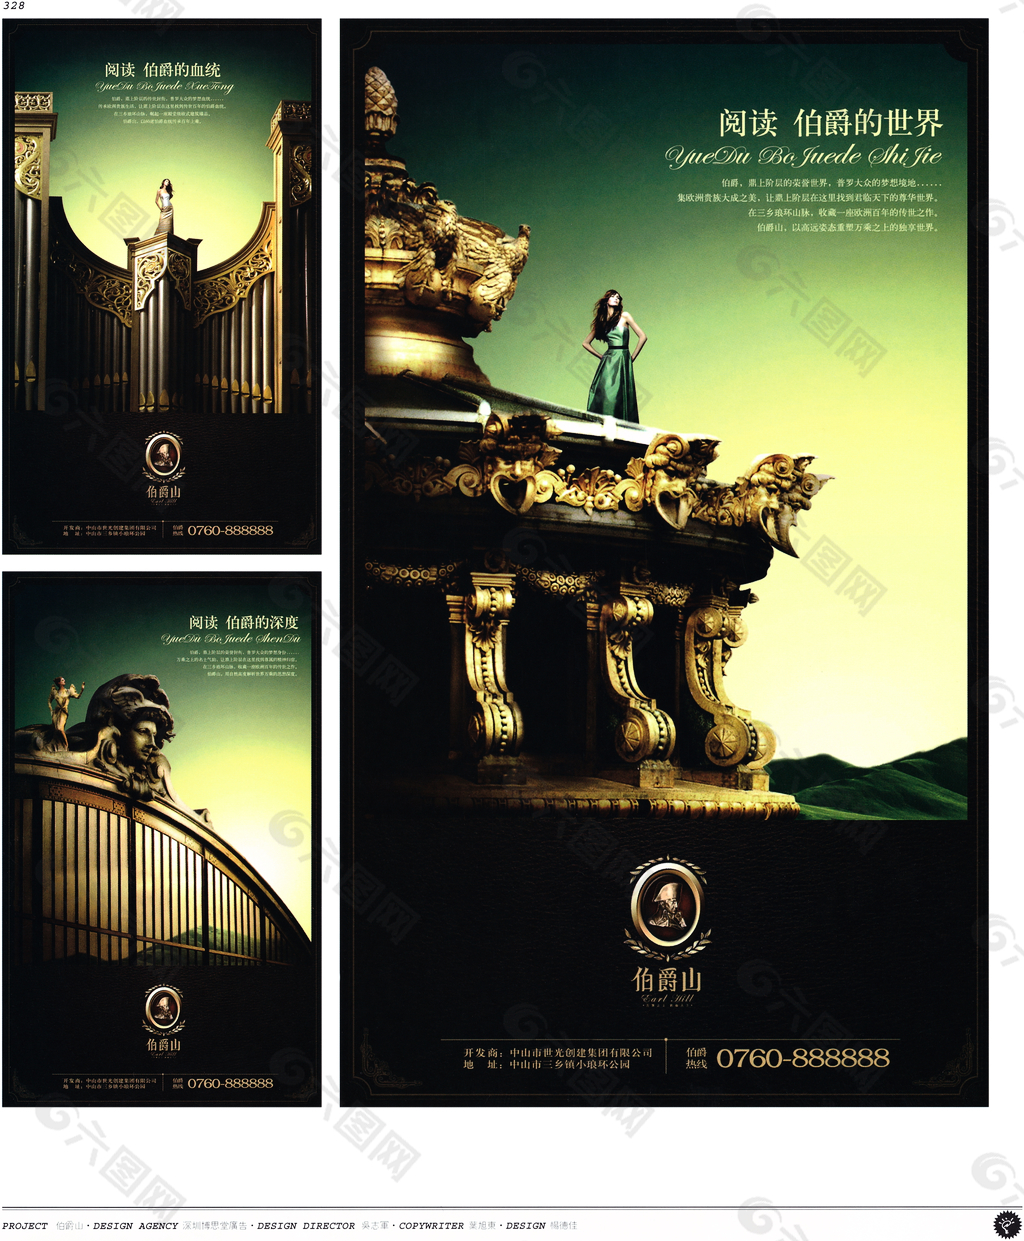 中国房地产广告年鉴 第二册 创意设计_0310